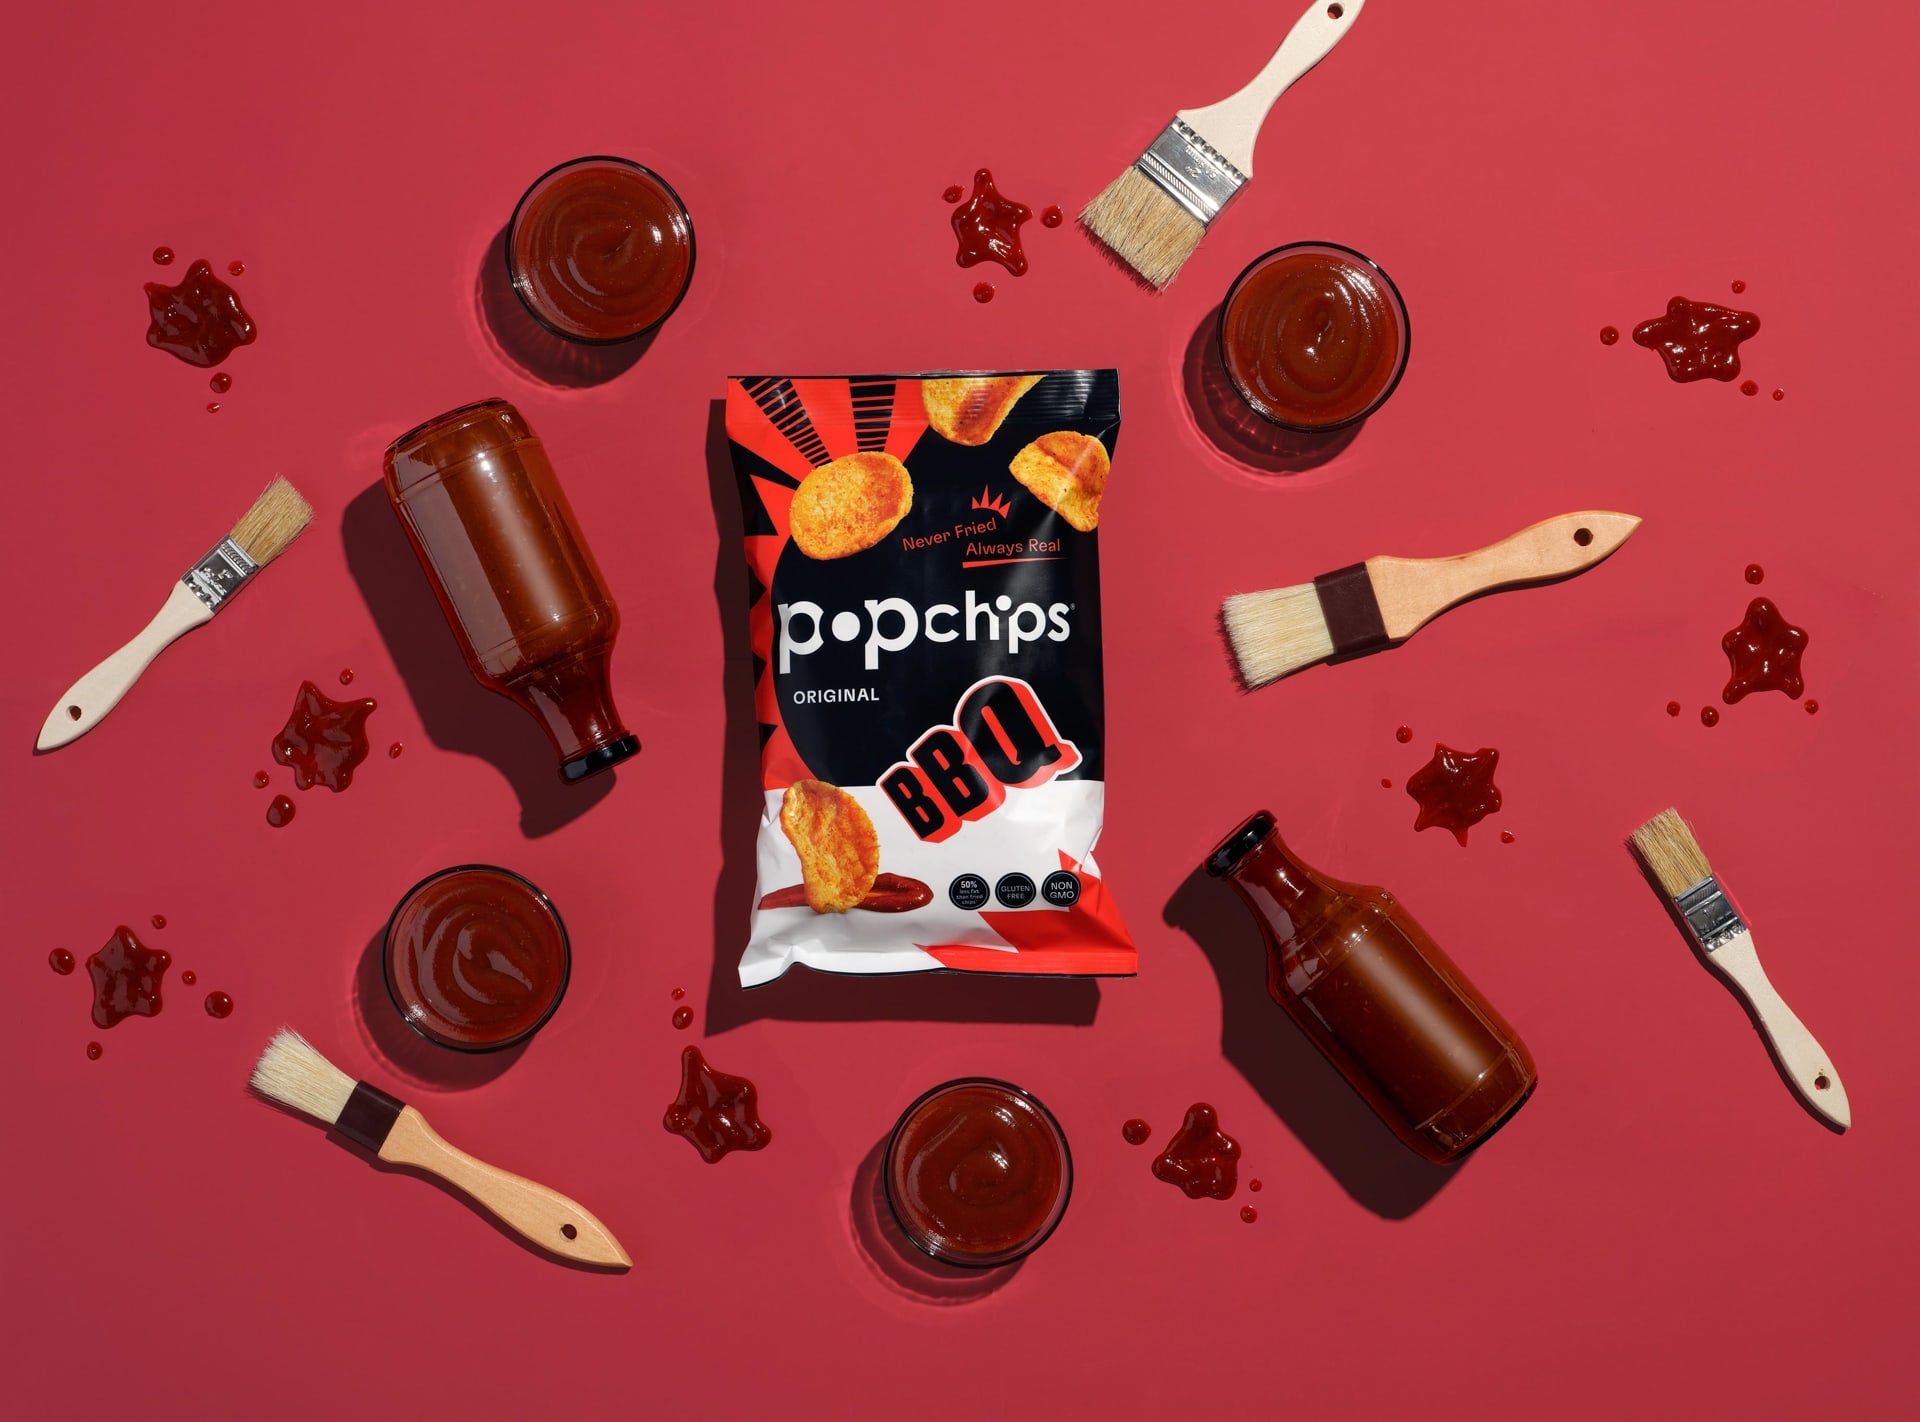  Popchips Potato Chips Variety Pack, Single Serve 0.8